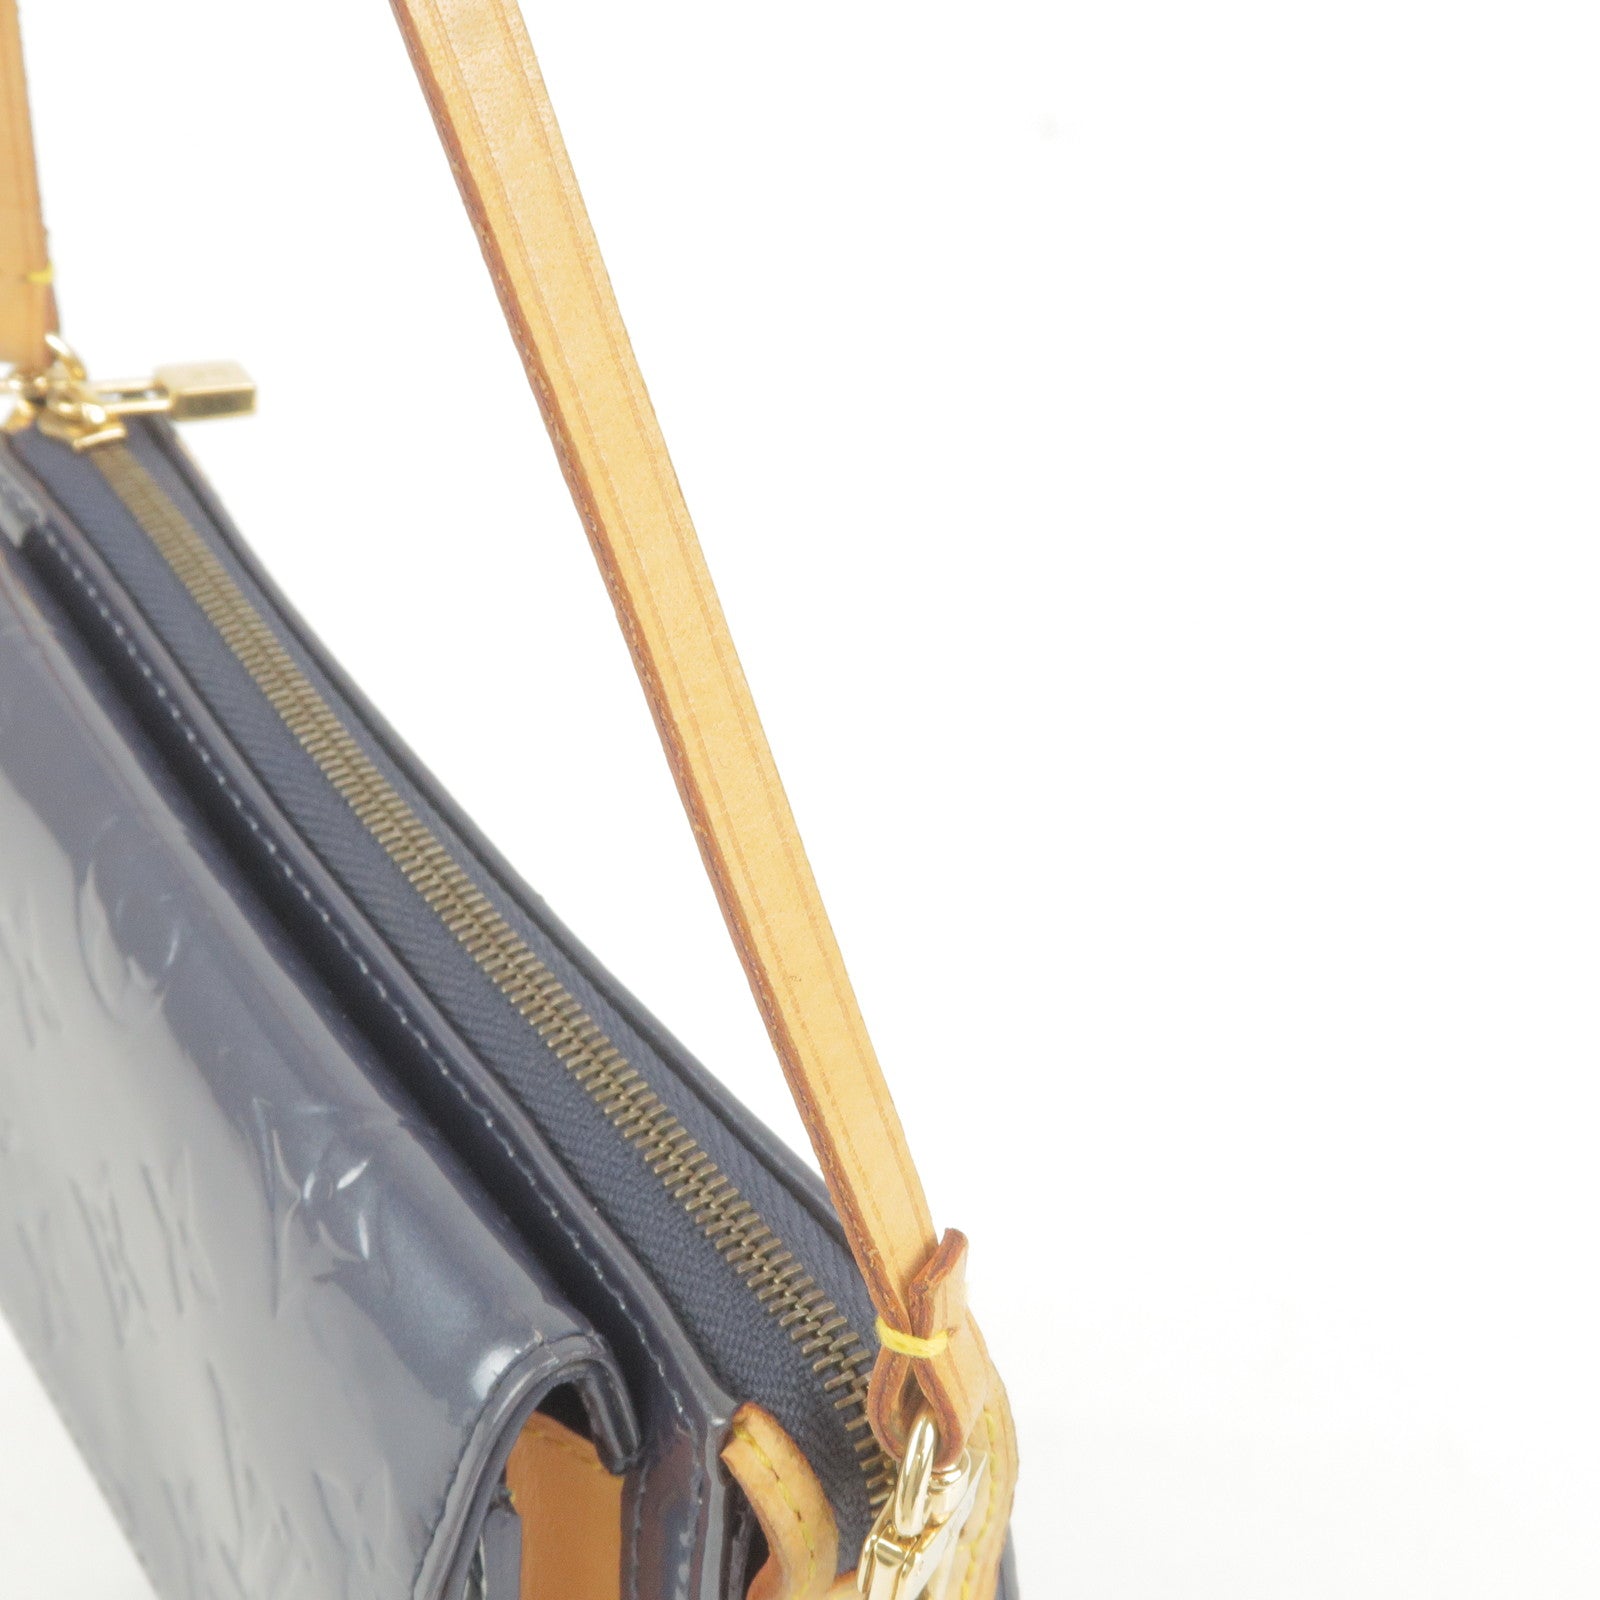 Louis Vuitton, Bags, Louis Vuitton Mott Shoulder Bag